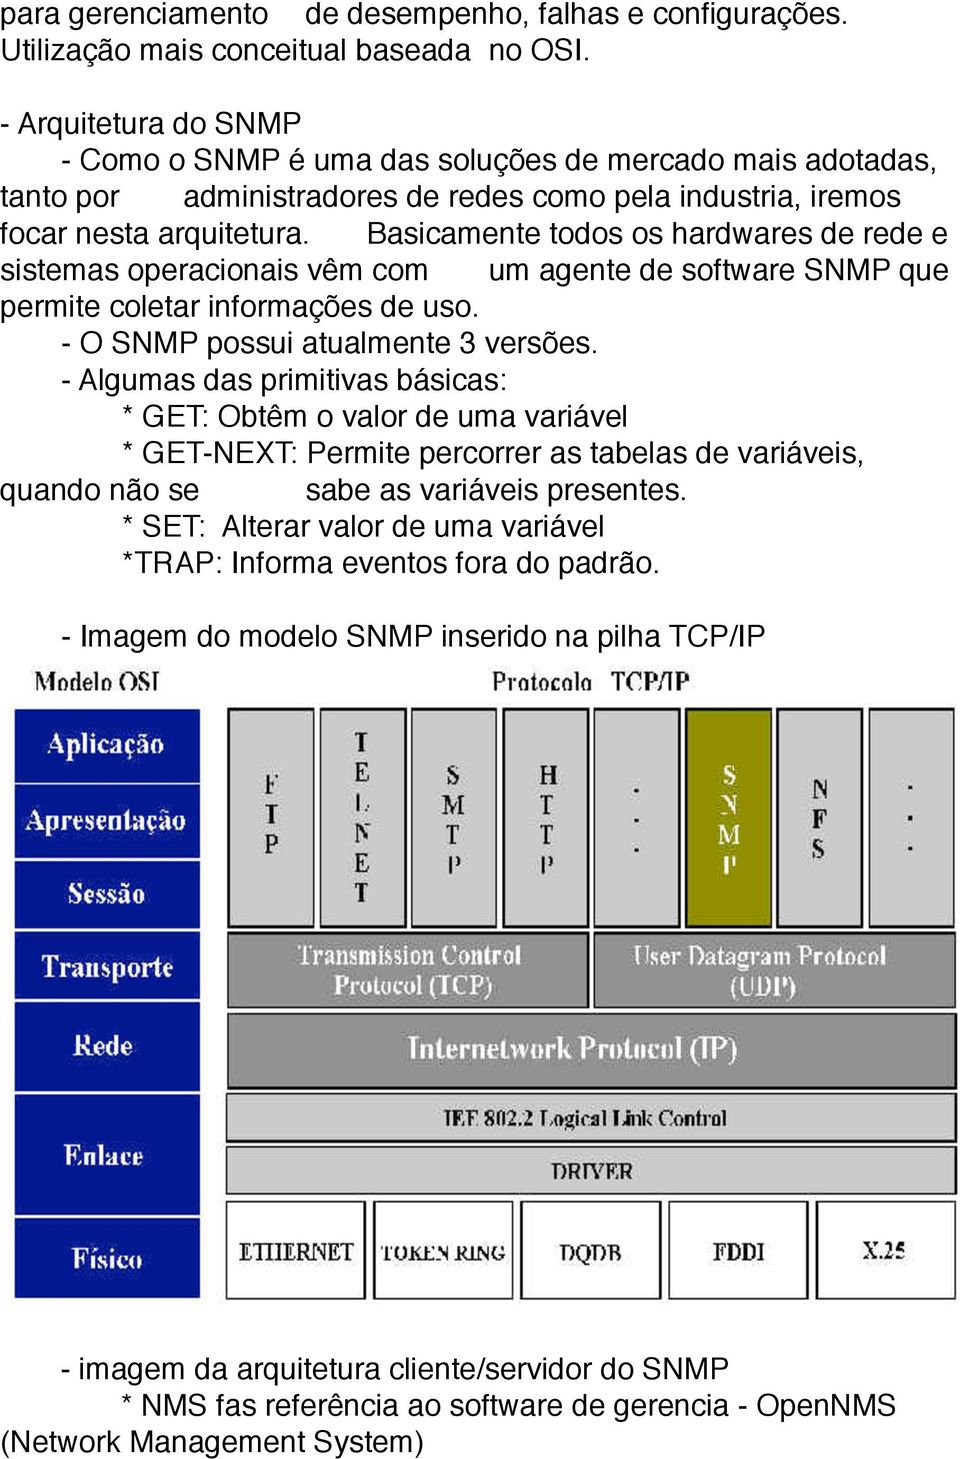 Basicamente todos os hardwares de rede e sistemas operacionais vêm com um agente de software SNMP que permite coletar informações de uso. - O SNMP possui atualmente 3 versões.